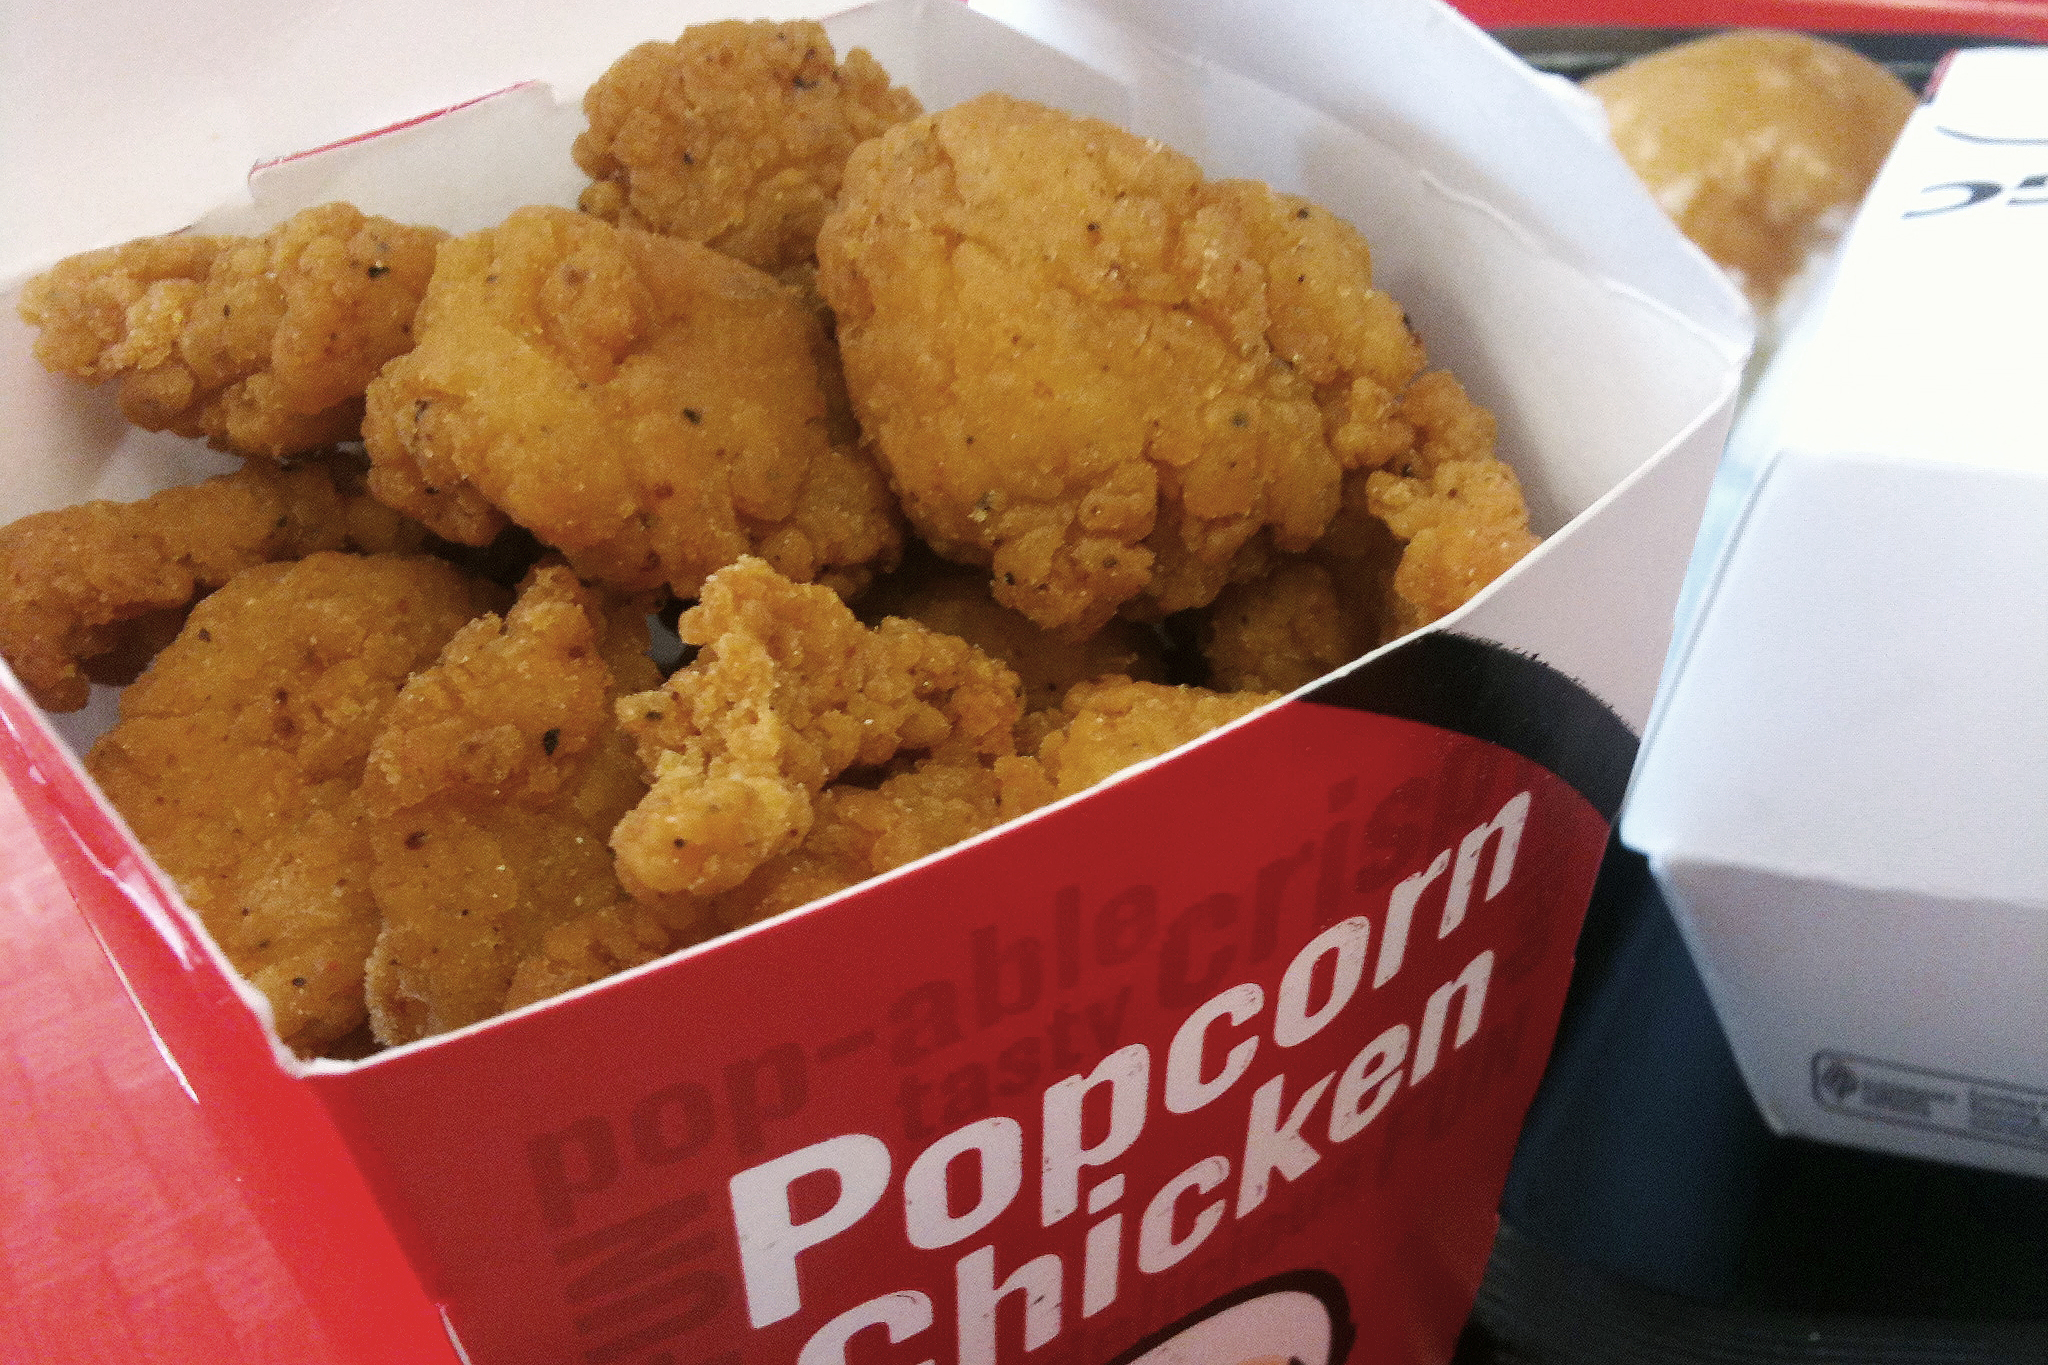 KFC Is Getting Rid of 5 Popular Menu Items